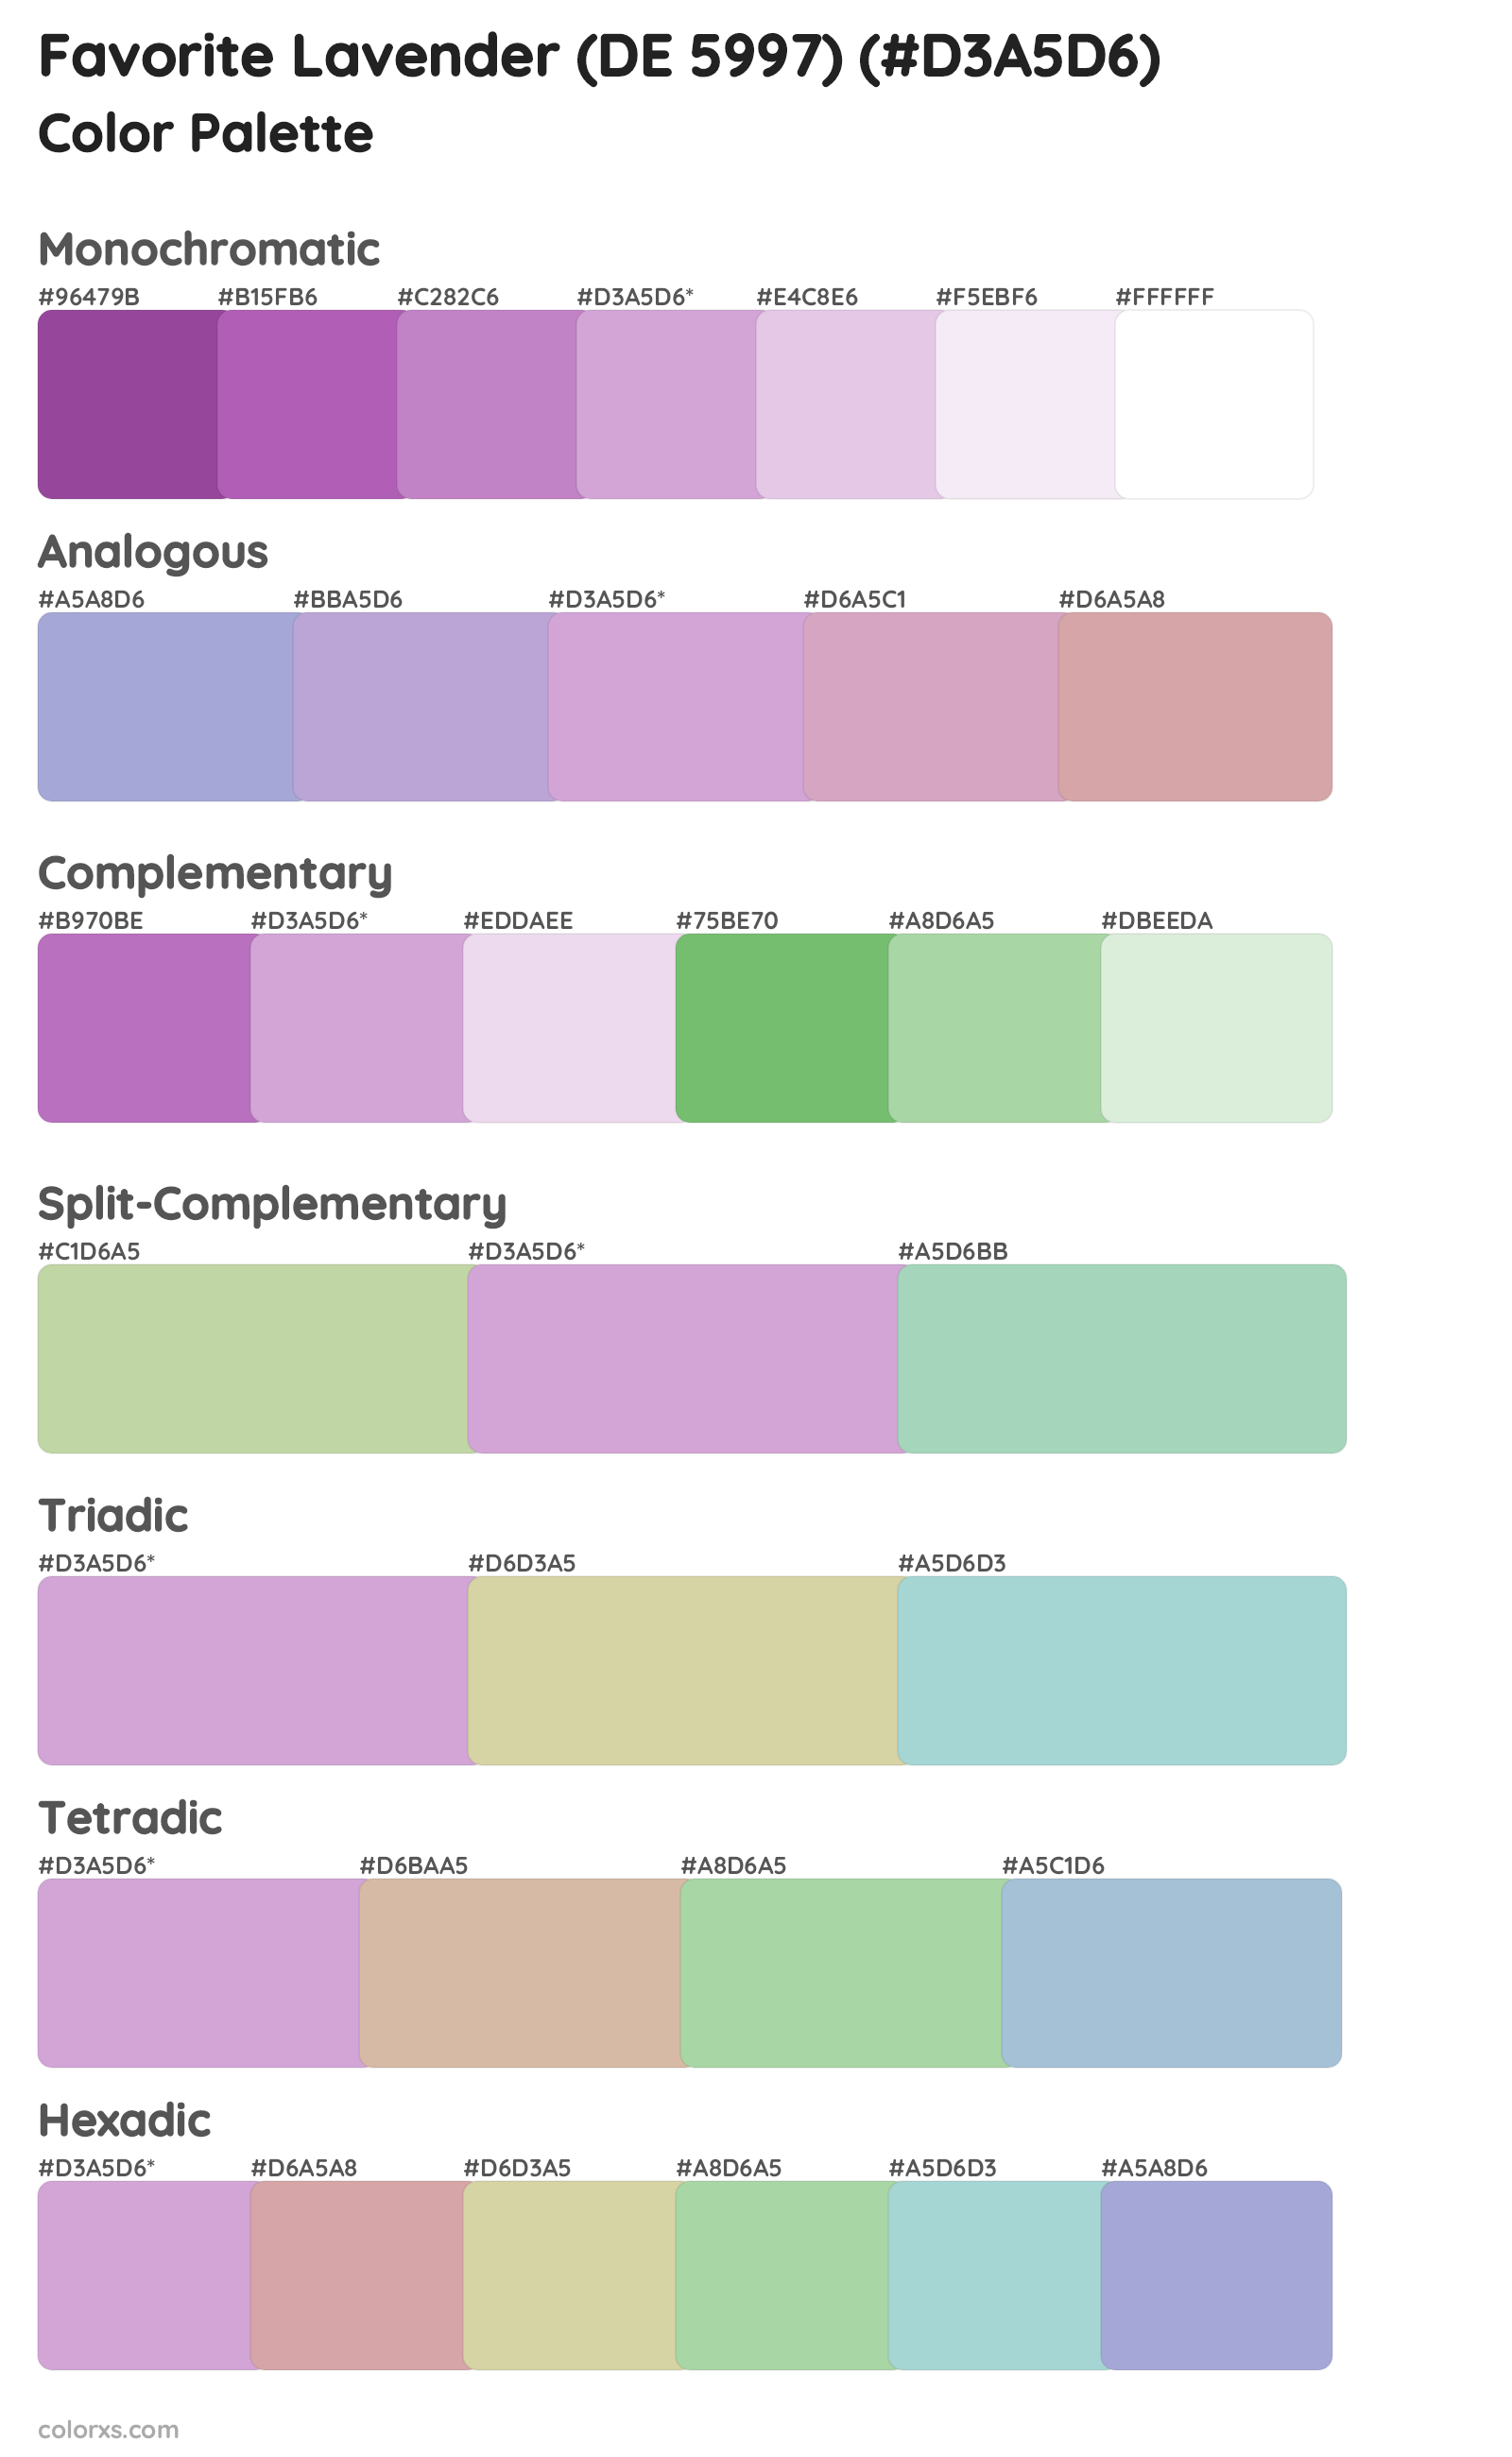 Favorite Lavender (DE 5997) Color Scheme Palettes